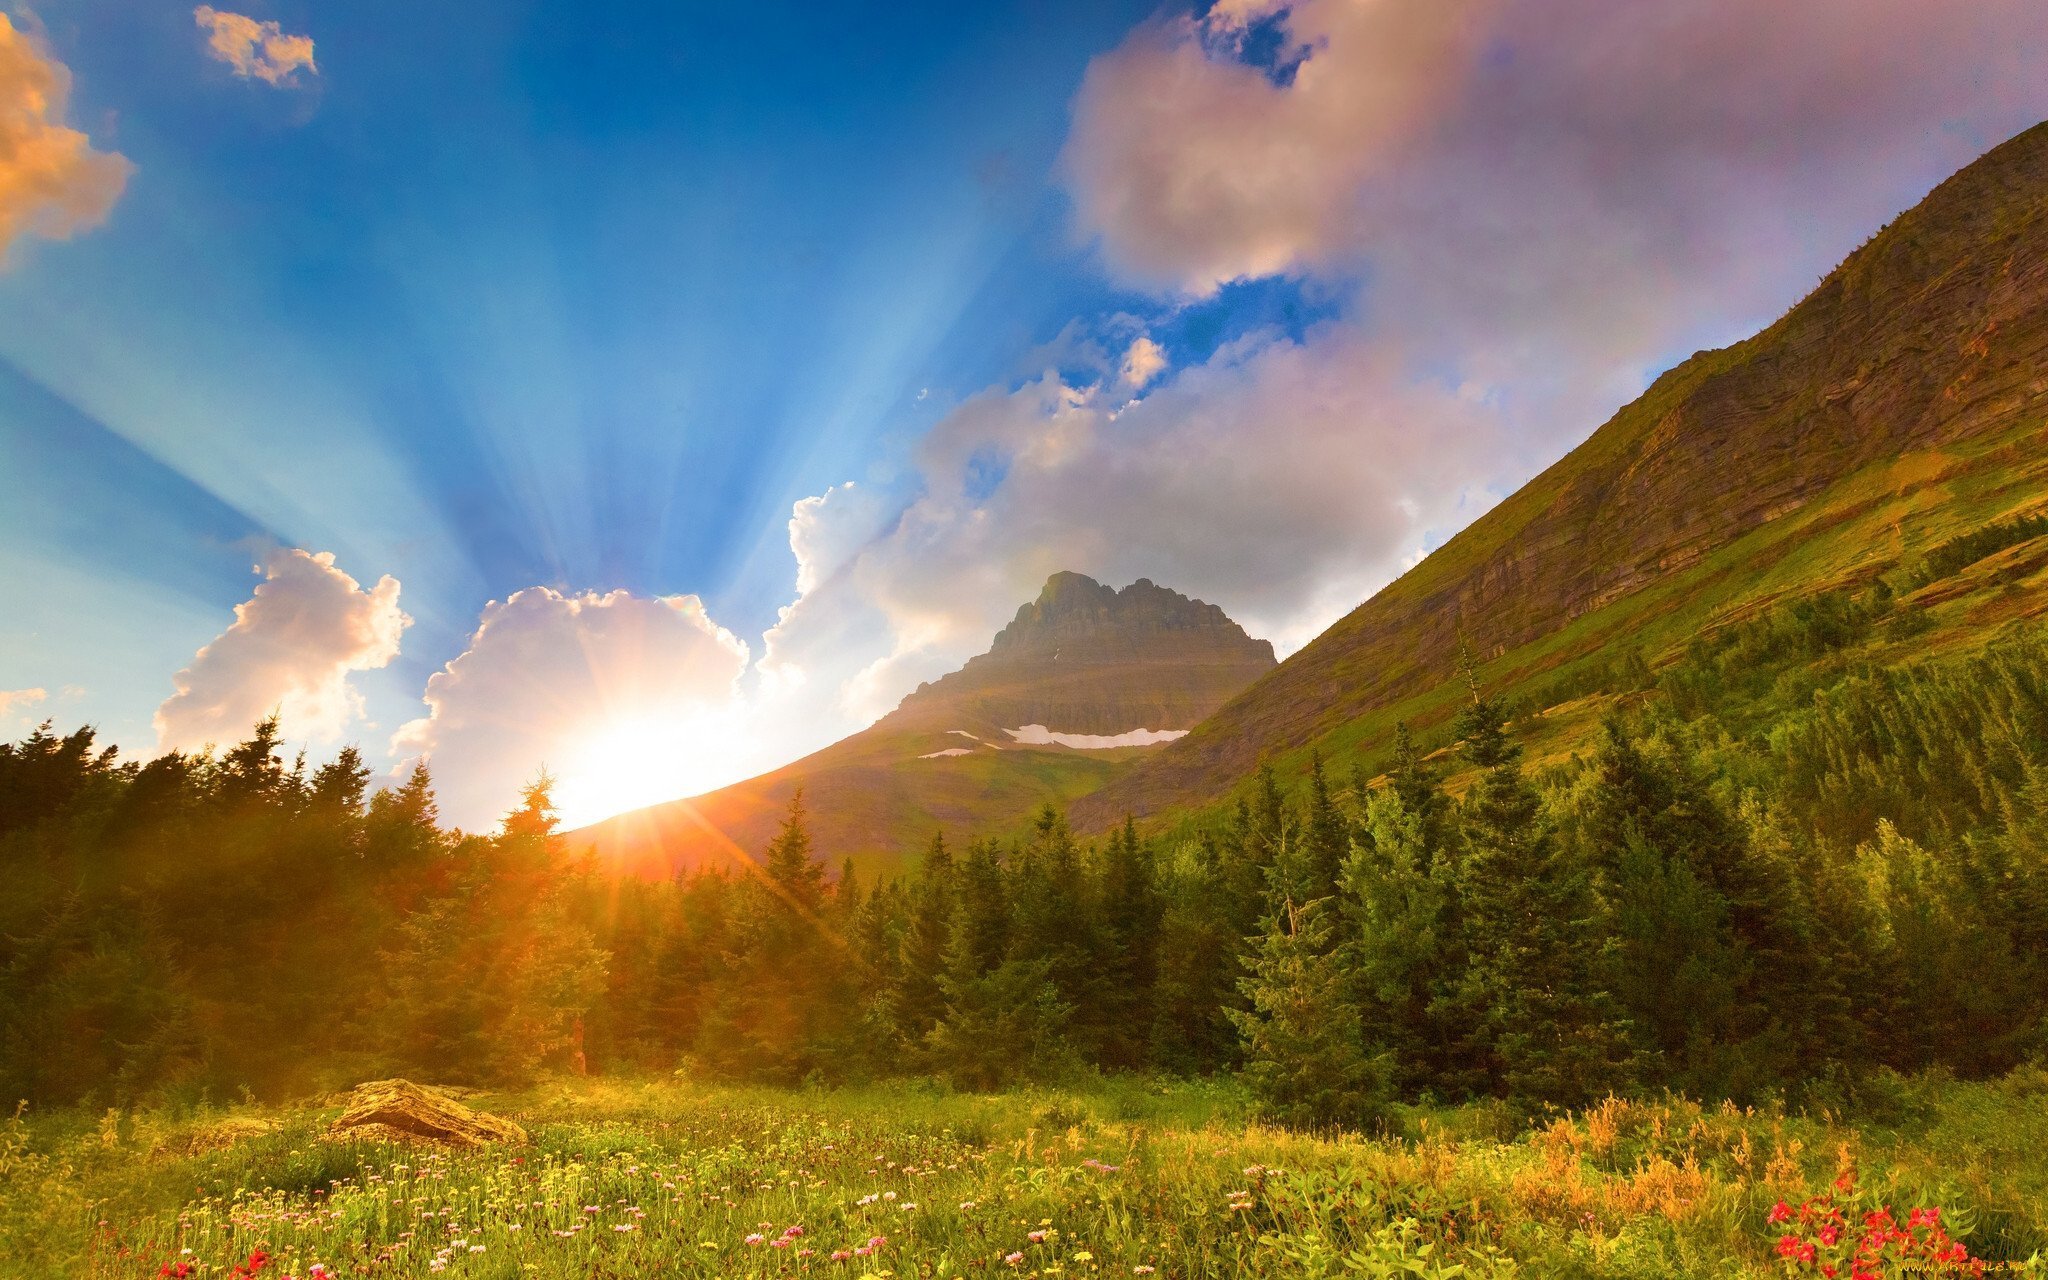 Гори солнце ярче лето будет. Григ утро в горах. Красивый рассвет. Рассвет в горах. Природа солнце.